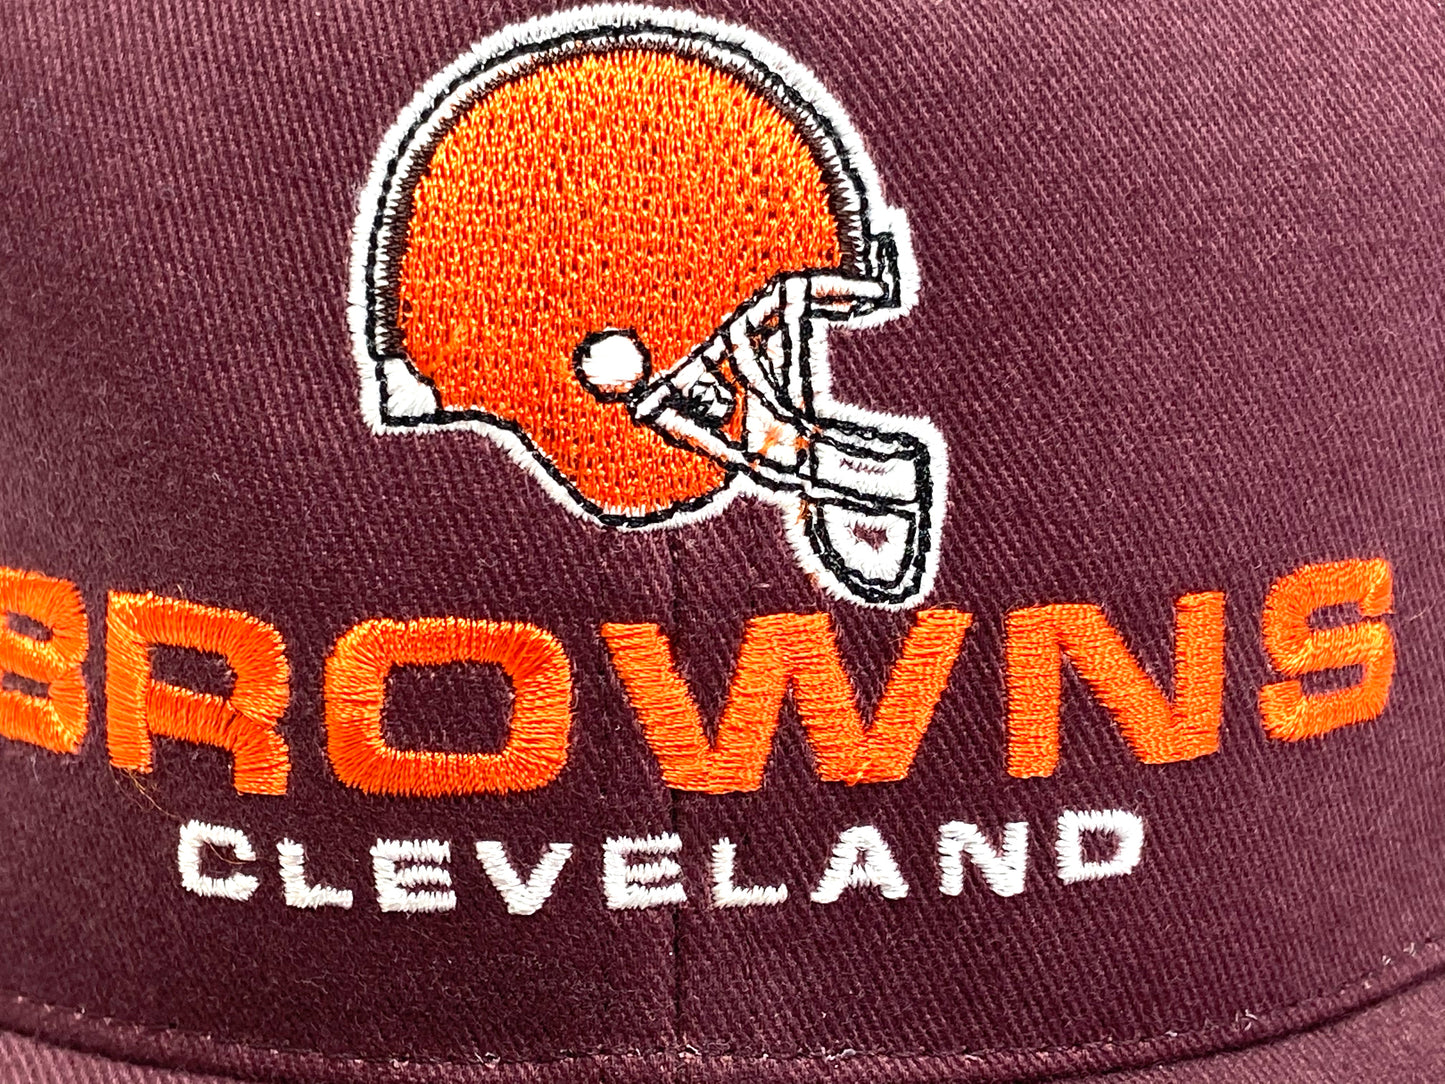 Cleveland Browns Vintage NFL Maroon 'Stache' Cap by Twins Enterprise